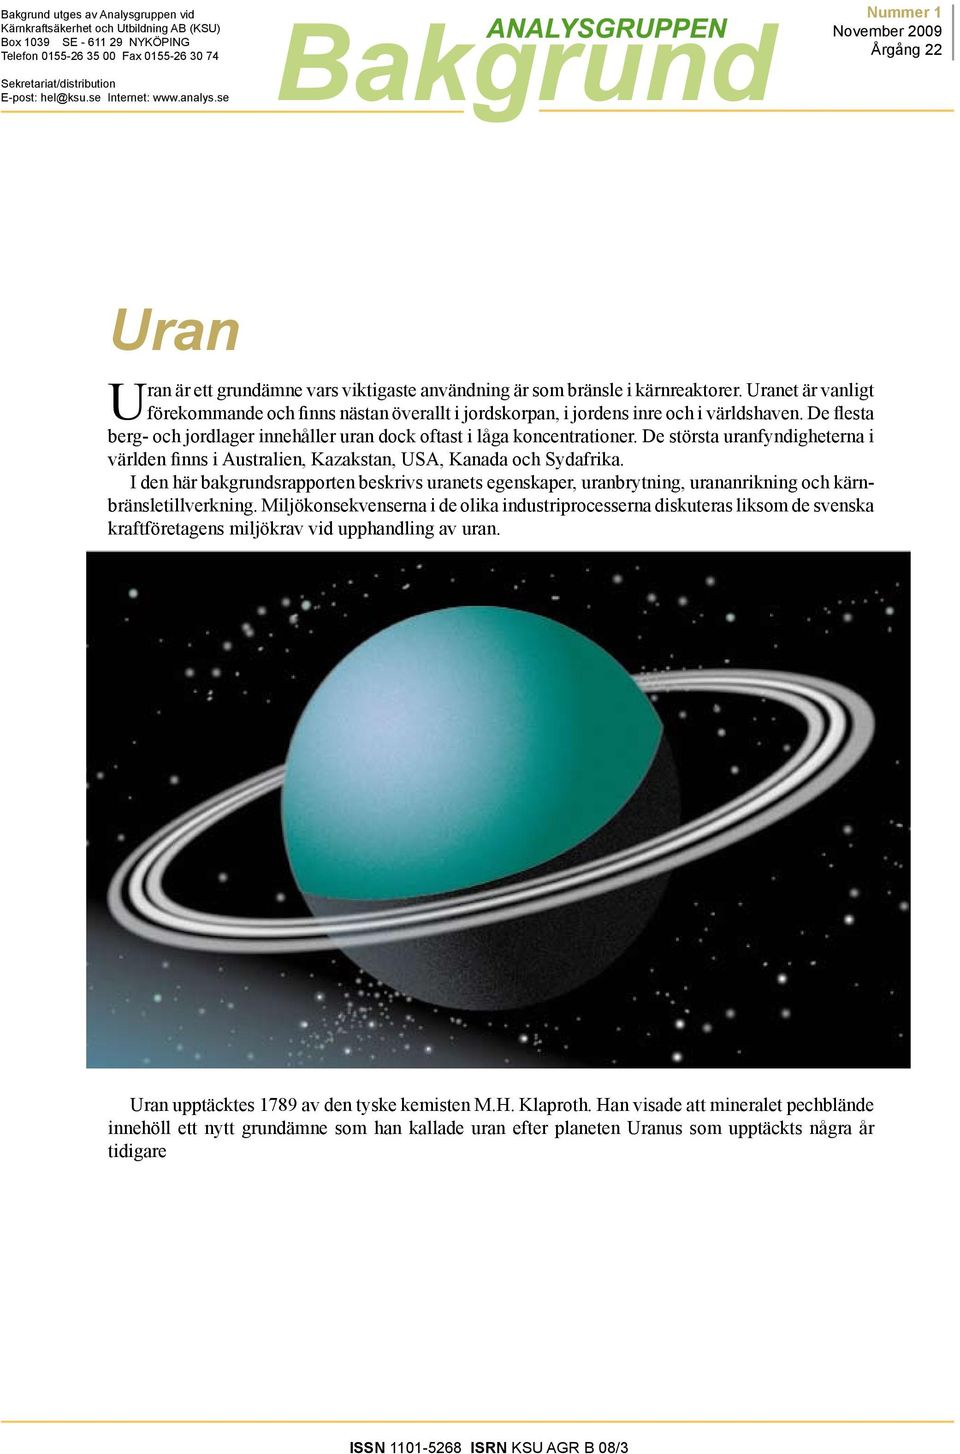 Uranet är vanligt förekommande och finns nästan överallt i jordskorpan, i jordens inre och i världshaven. De flesta berg- och jordlager innehåller uran dock oftast i låga koncentrationer.